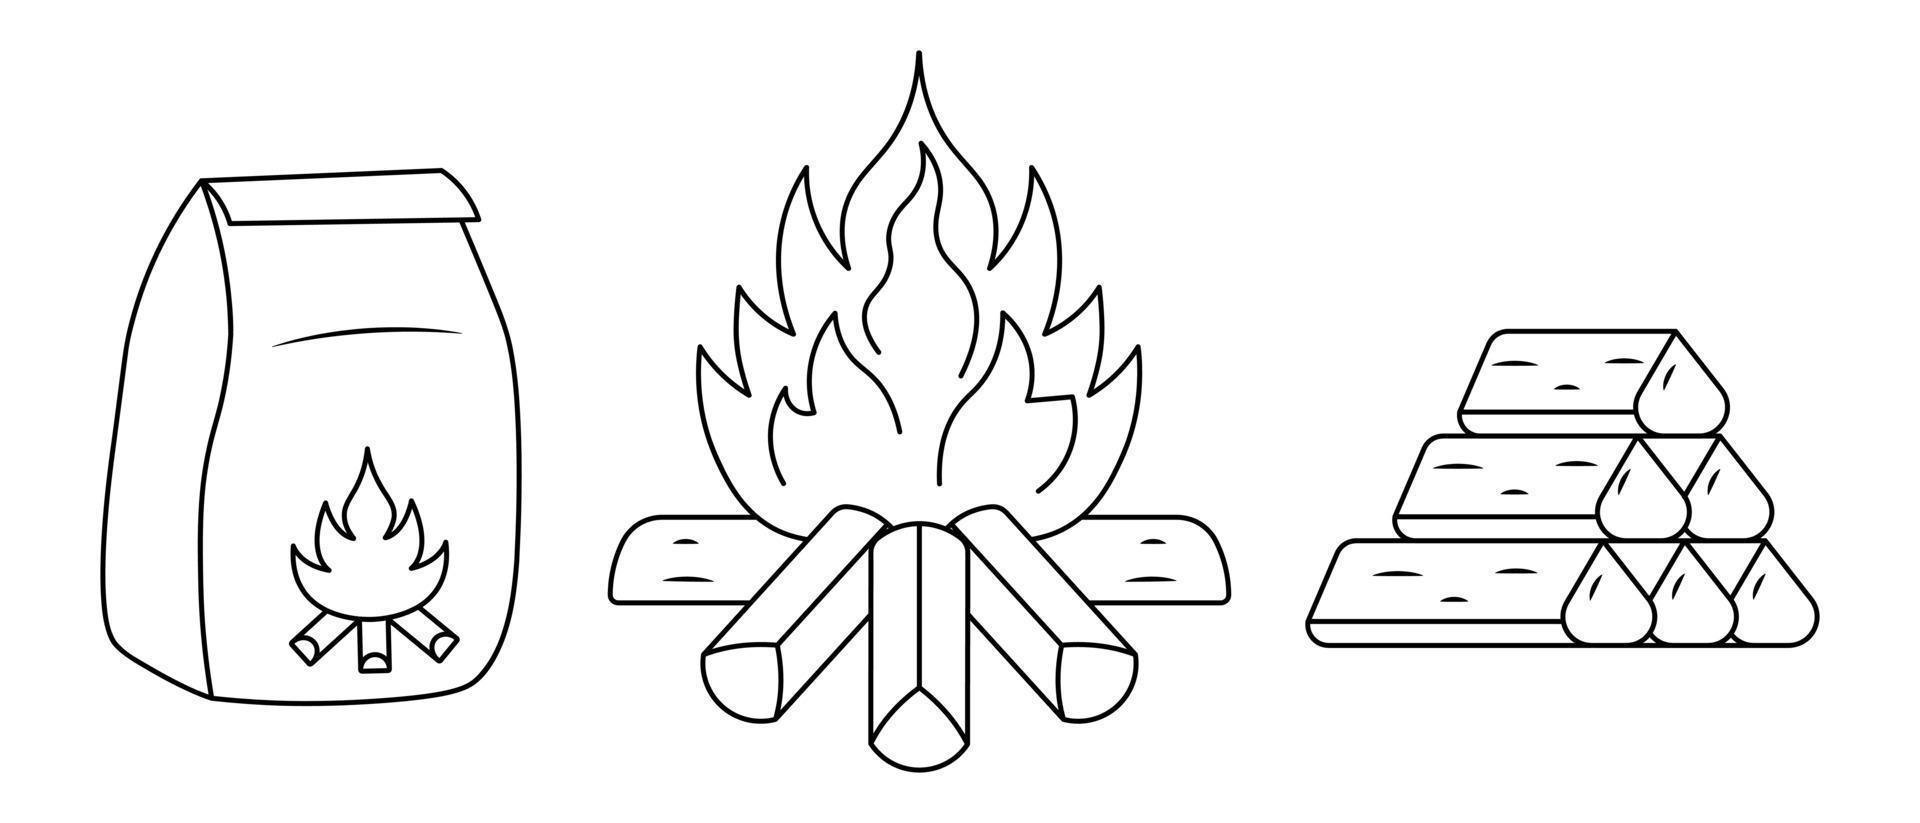 kol för eld i papperspåse, eld och ved. skiss. material för antändning av en eldstad. uppsättning vektor illustrationer. doodle stil. en het låga av eld och stockar staplas i en pyramid.